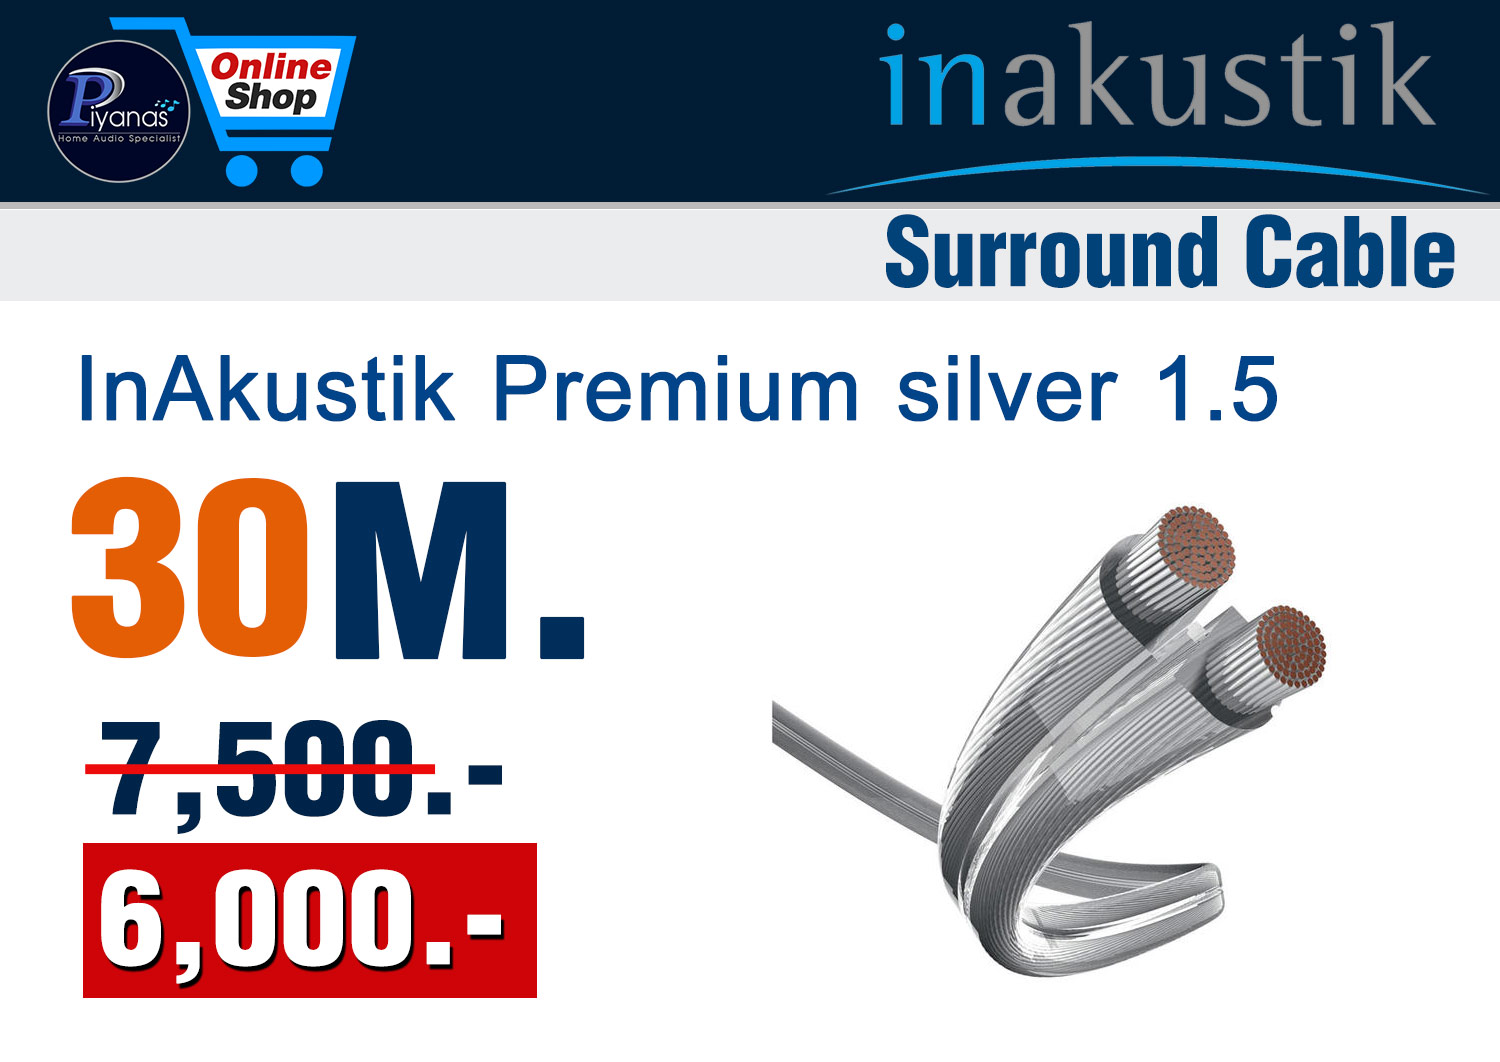 Monitor Premium silver 1.5 (30M.)